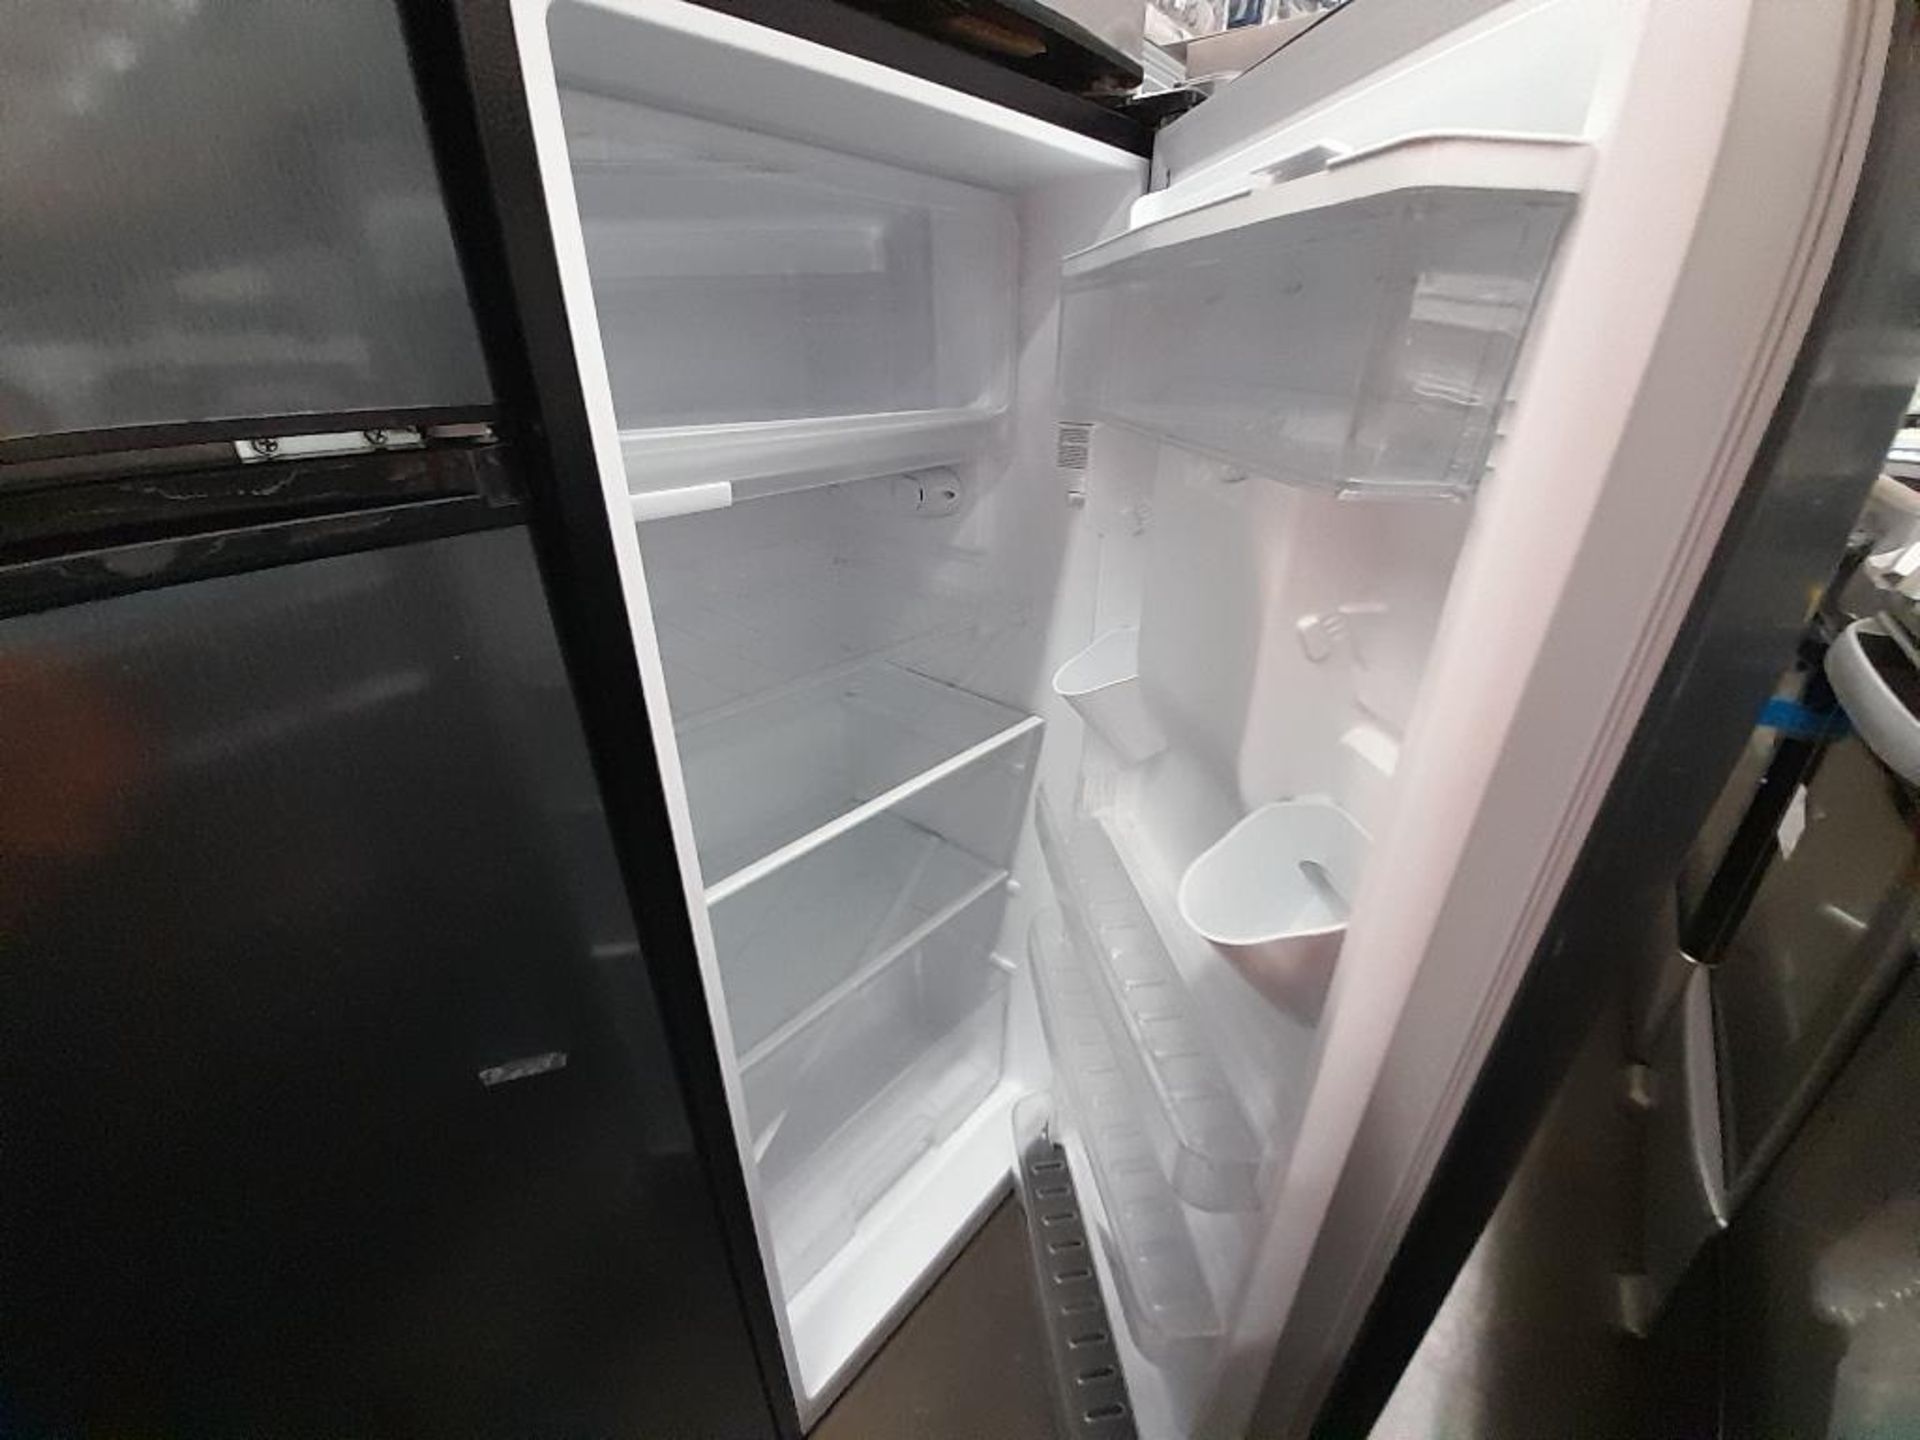 Lote de 3 refrigeradores Contiene: 1 Refrigerador Marca ATVIO, Modelo AT73TMS, Serie ND, Color GRIS - Image 5 of 9